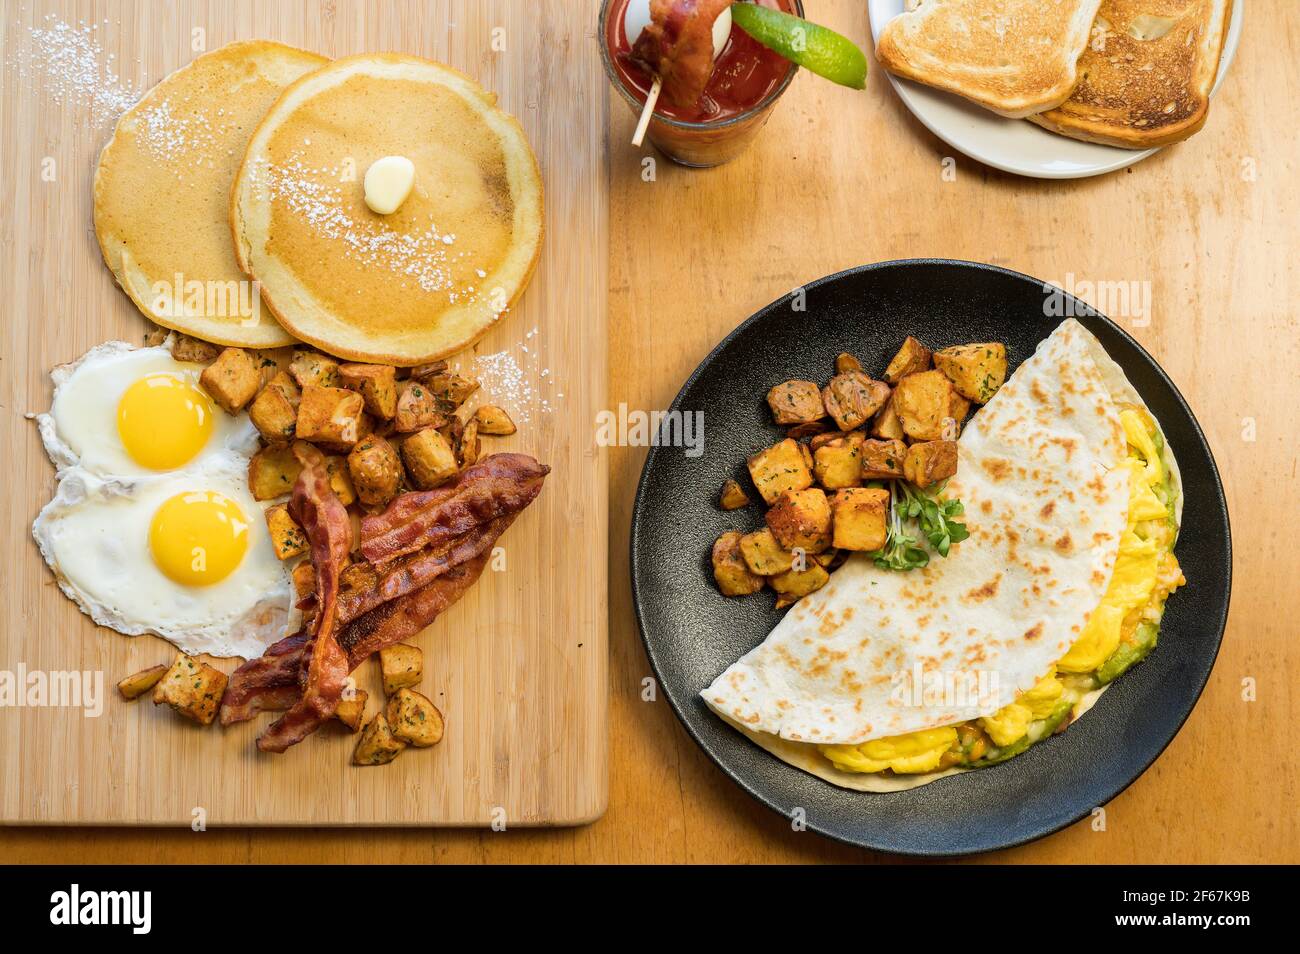 Huevos Rancheros und ein Slam-Frühstück. Drei Rühreier in einer Mehl-Tortilla mit gebratenen Bohnen, Guacamole und geriebenem Käse. Zwei Eier sonnig si Stockfoto